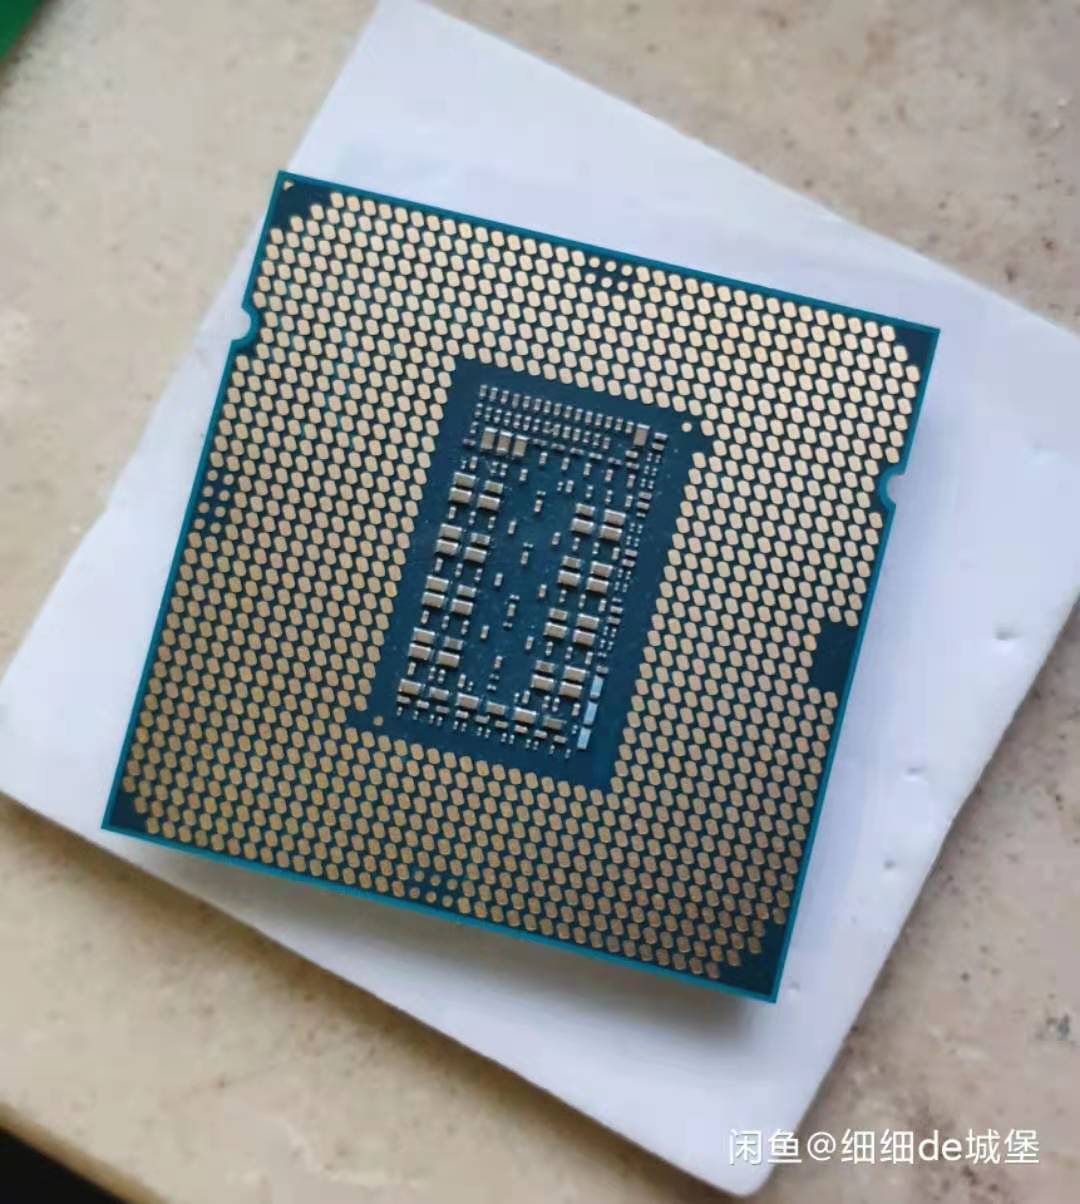 Immagine pubblicata in relazione al seguente contenuto: Le CPU Intel Rocket Lake-S Core i9-11900 e Core i9-11900K testate con CPU-Z | Nome immagine: news31472_Intel-Rocket-Lake-S_1.jpg